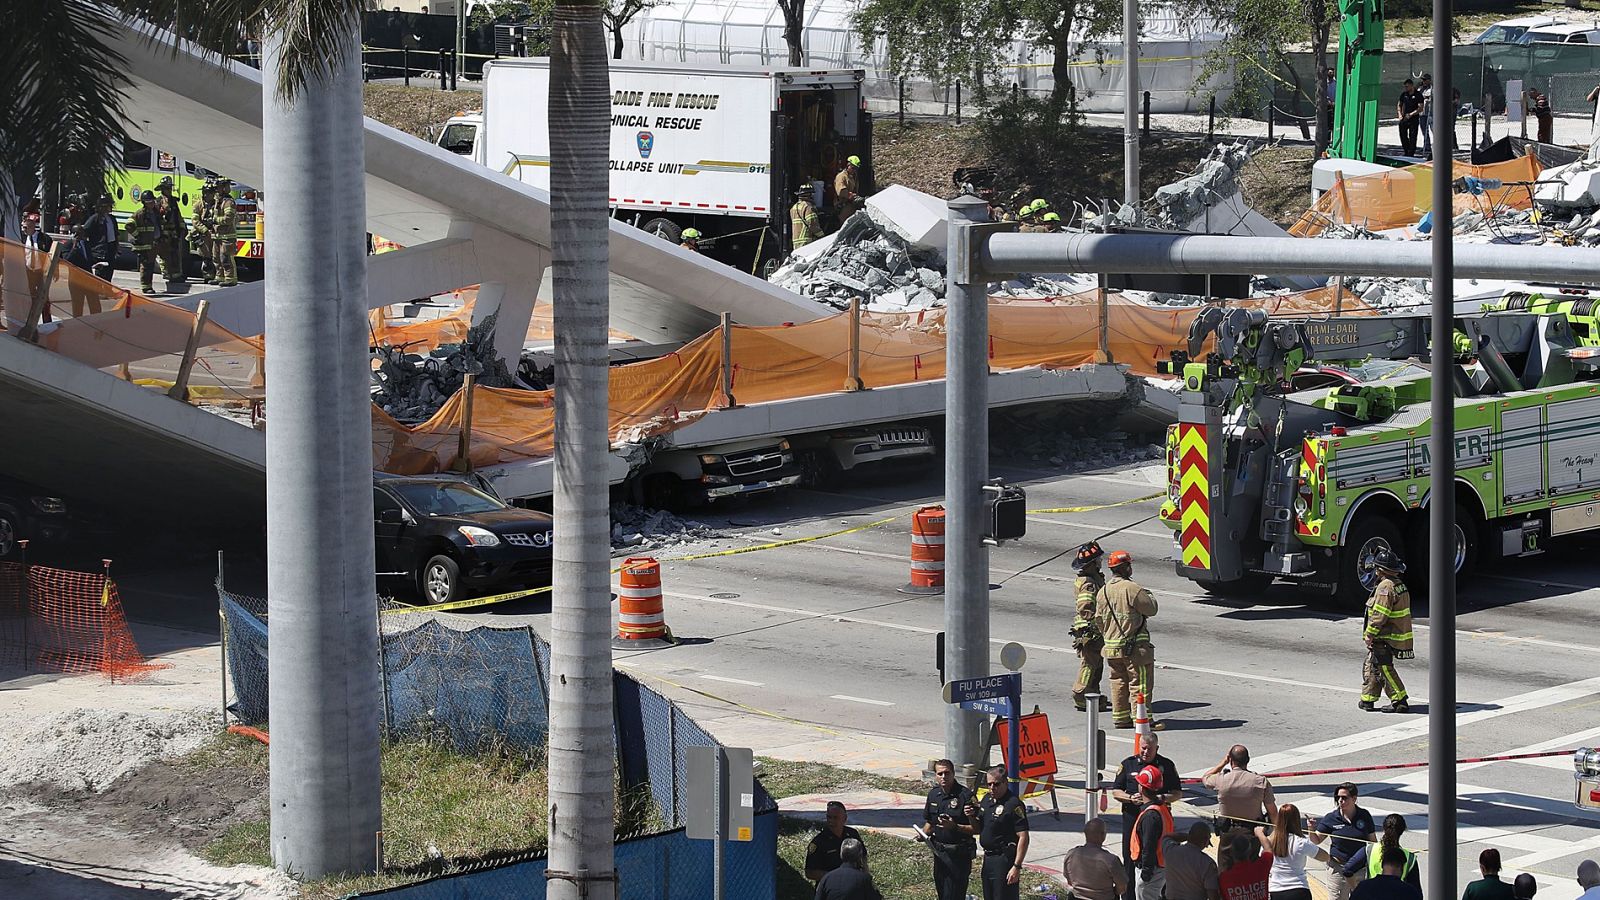 Puente derrumbado Miami: Un puente peatonal se desploma en Miami y atrapa a decenas de coches